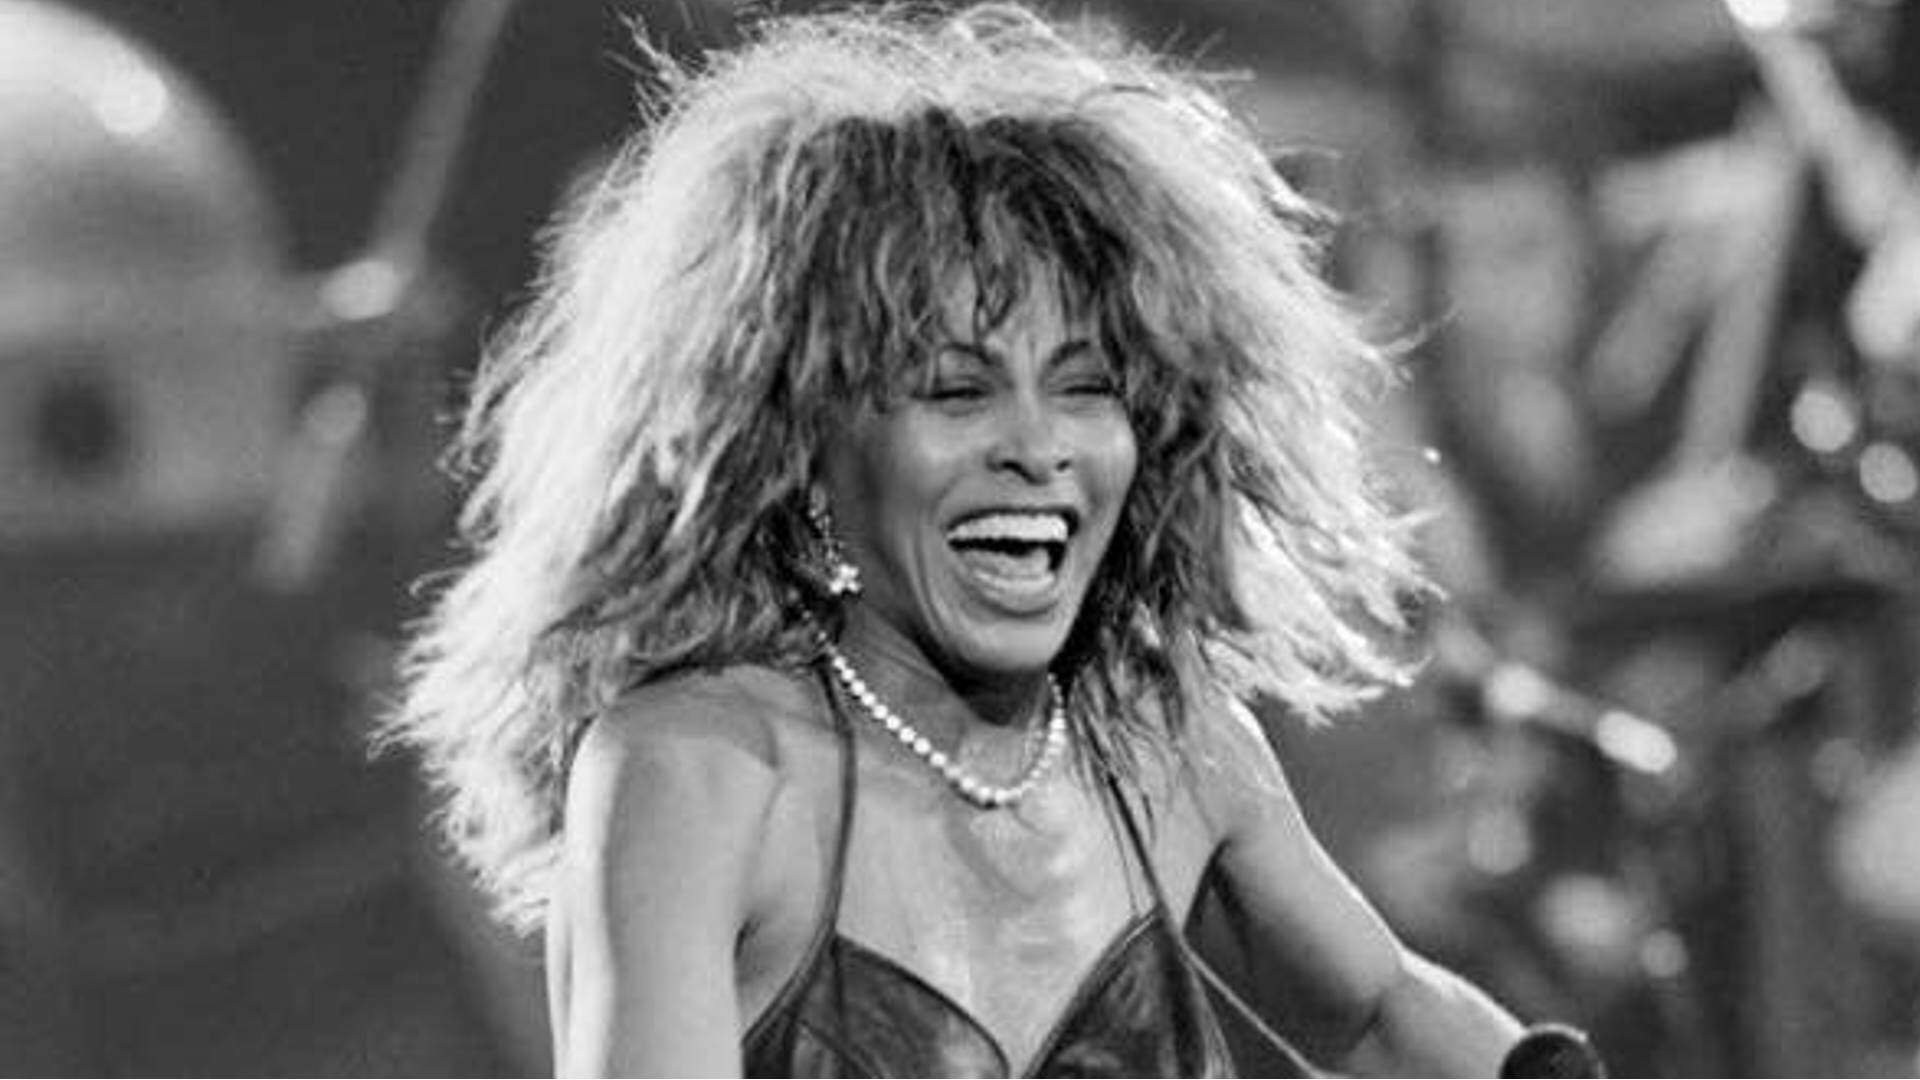 Morre Tina Turner, ícone da música, aos 83 anos - Metropolitana FM